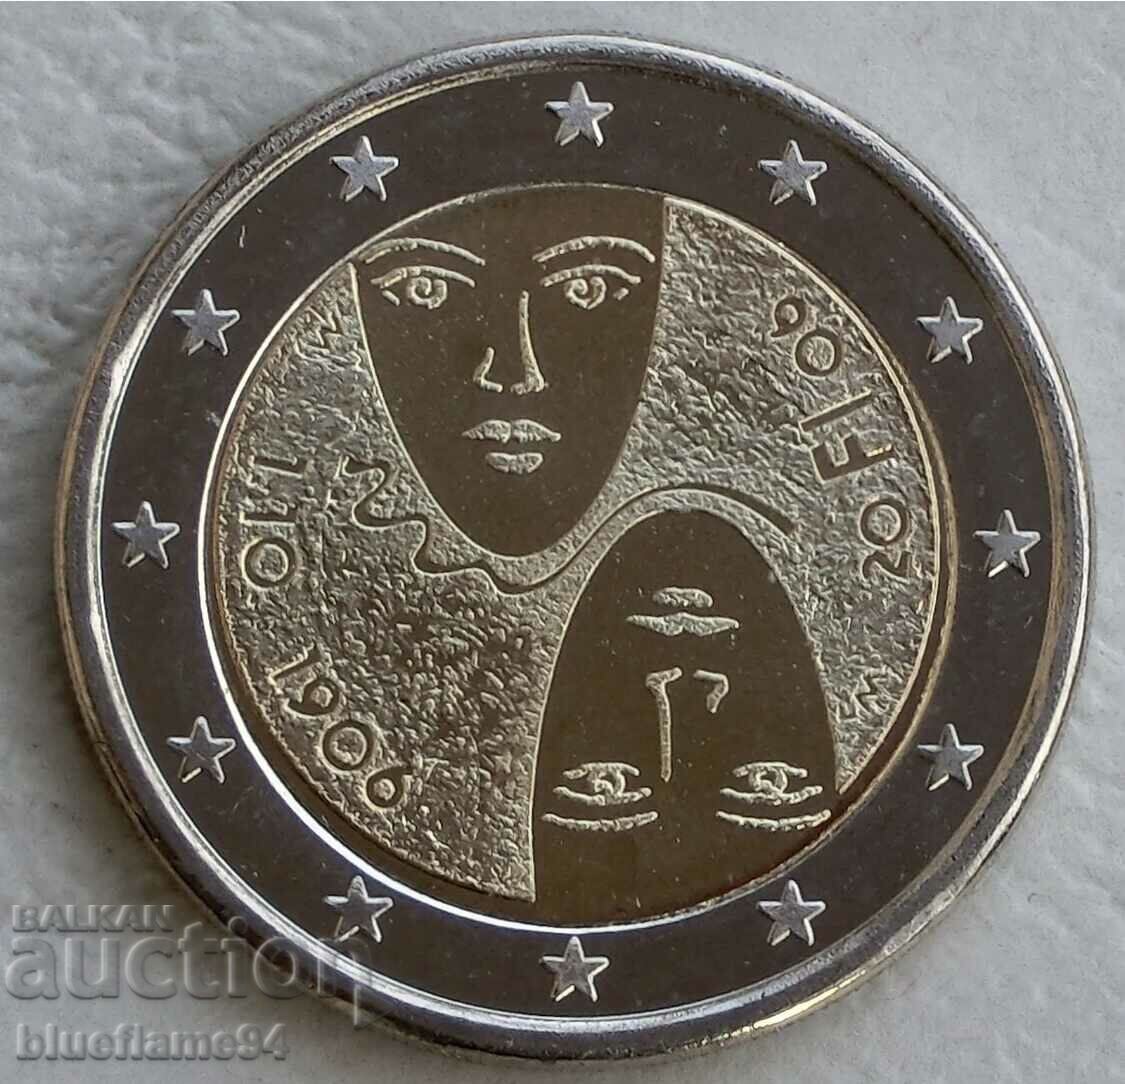 2 Euro Finland 2006